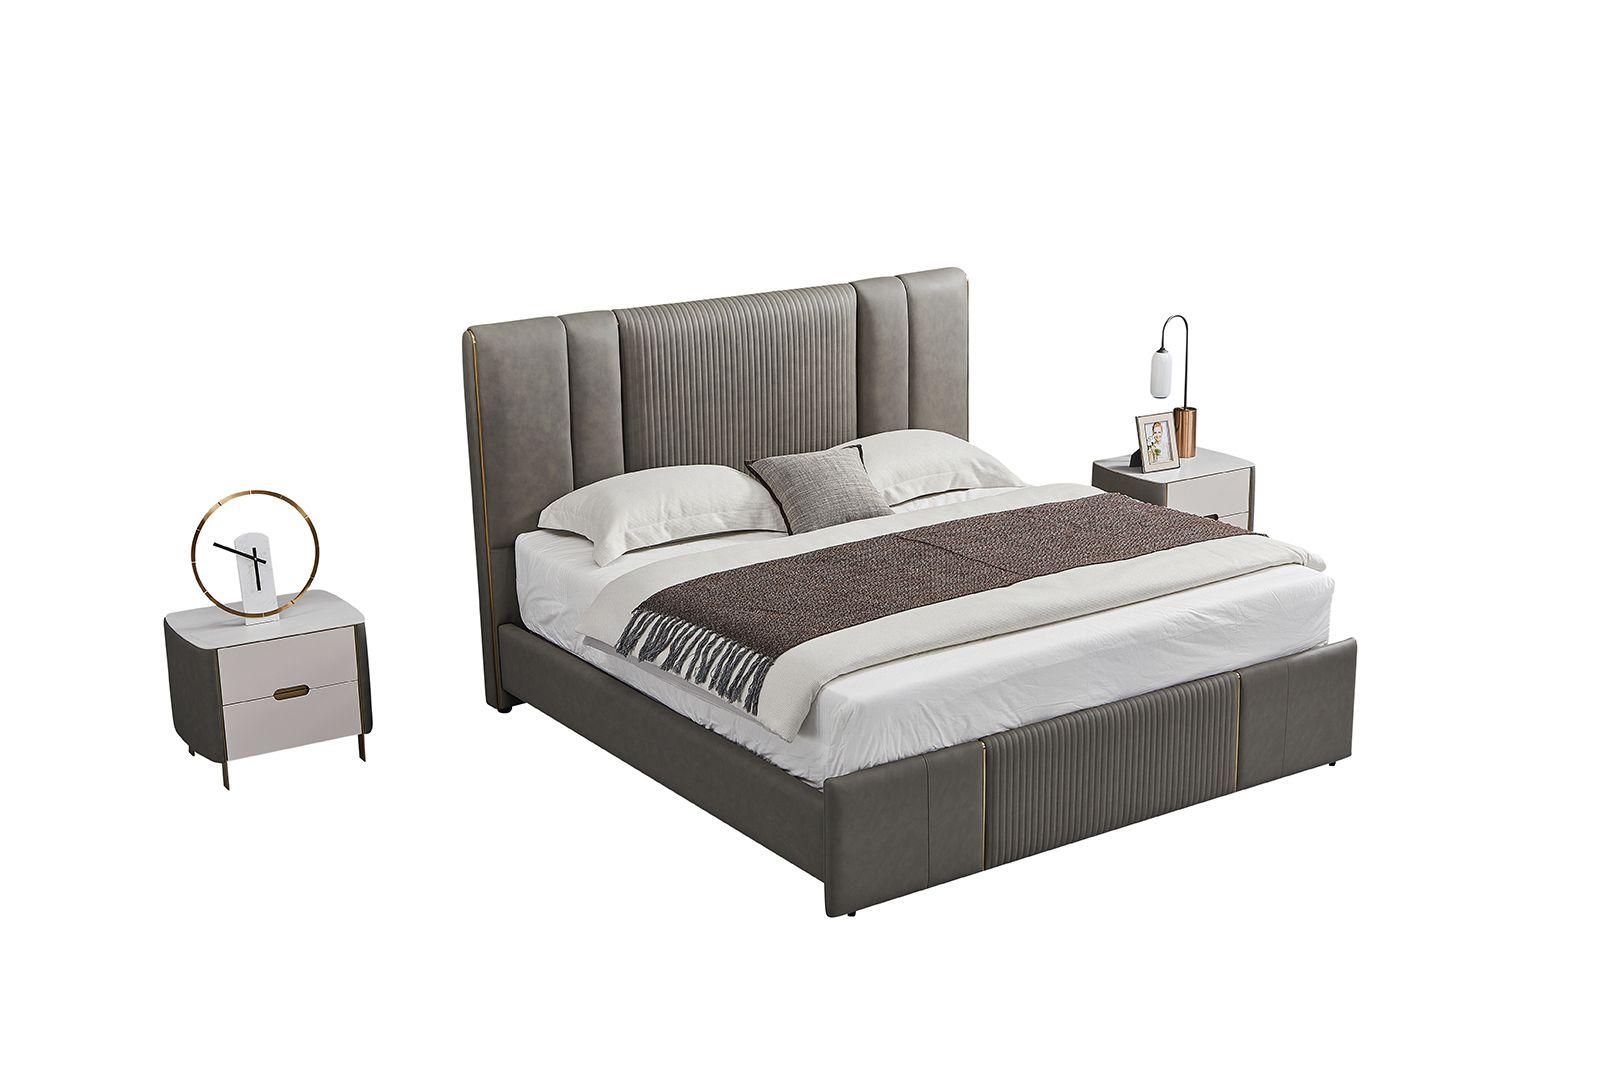 Contemporary, Modern Platform Bedroom Set B-Y2009-Q / NS-Y2009 B-Y2009-Q-3PC in Gray Genuine Leather